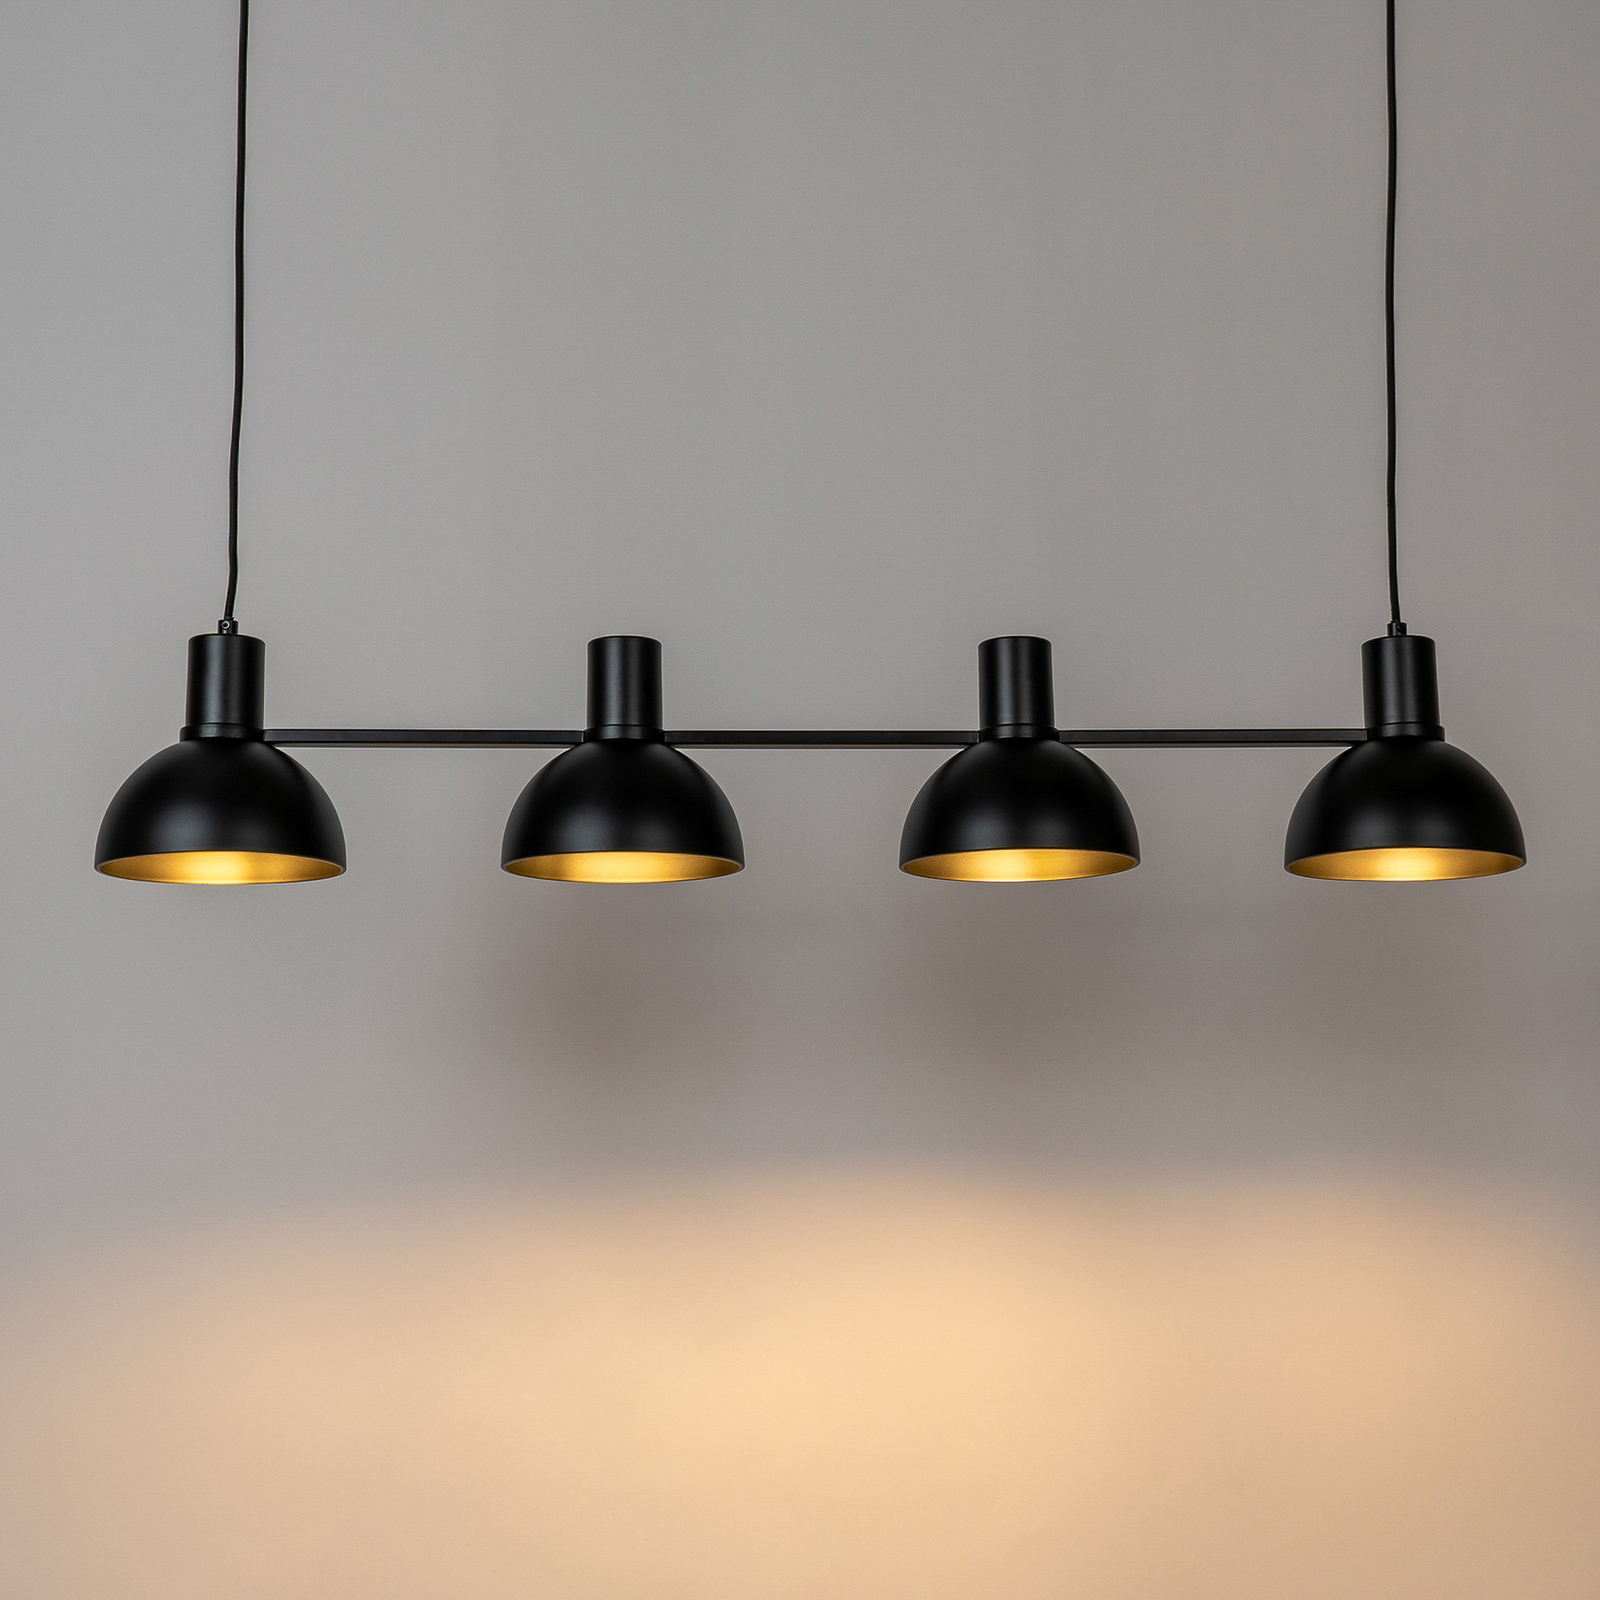 Lucande Mostrid hanging light, black, 4-bulb